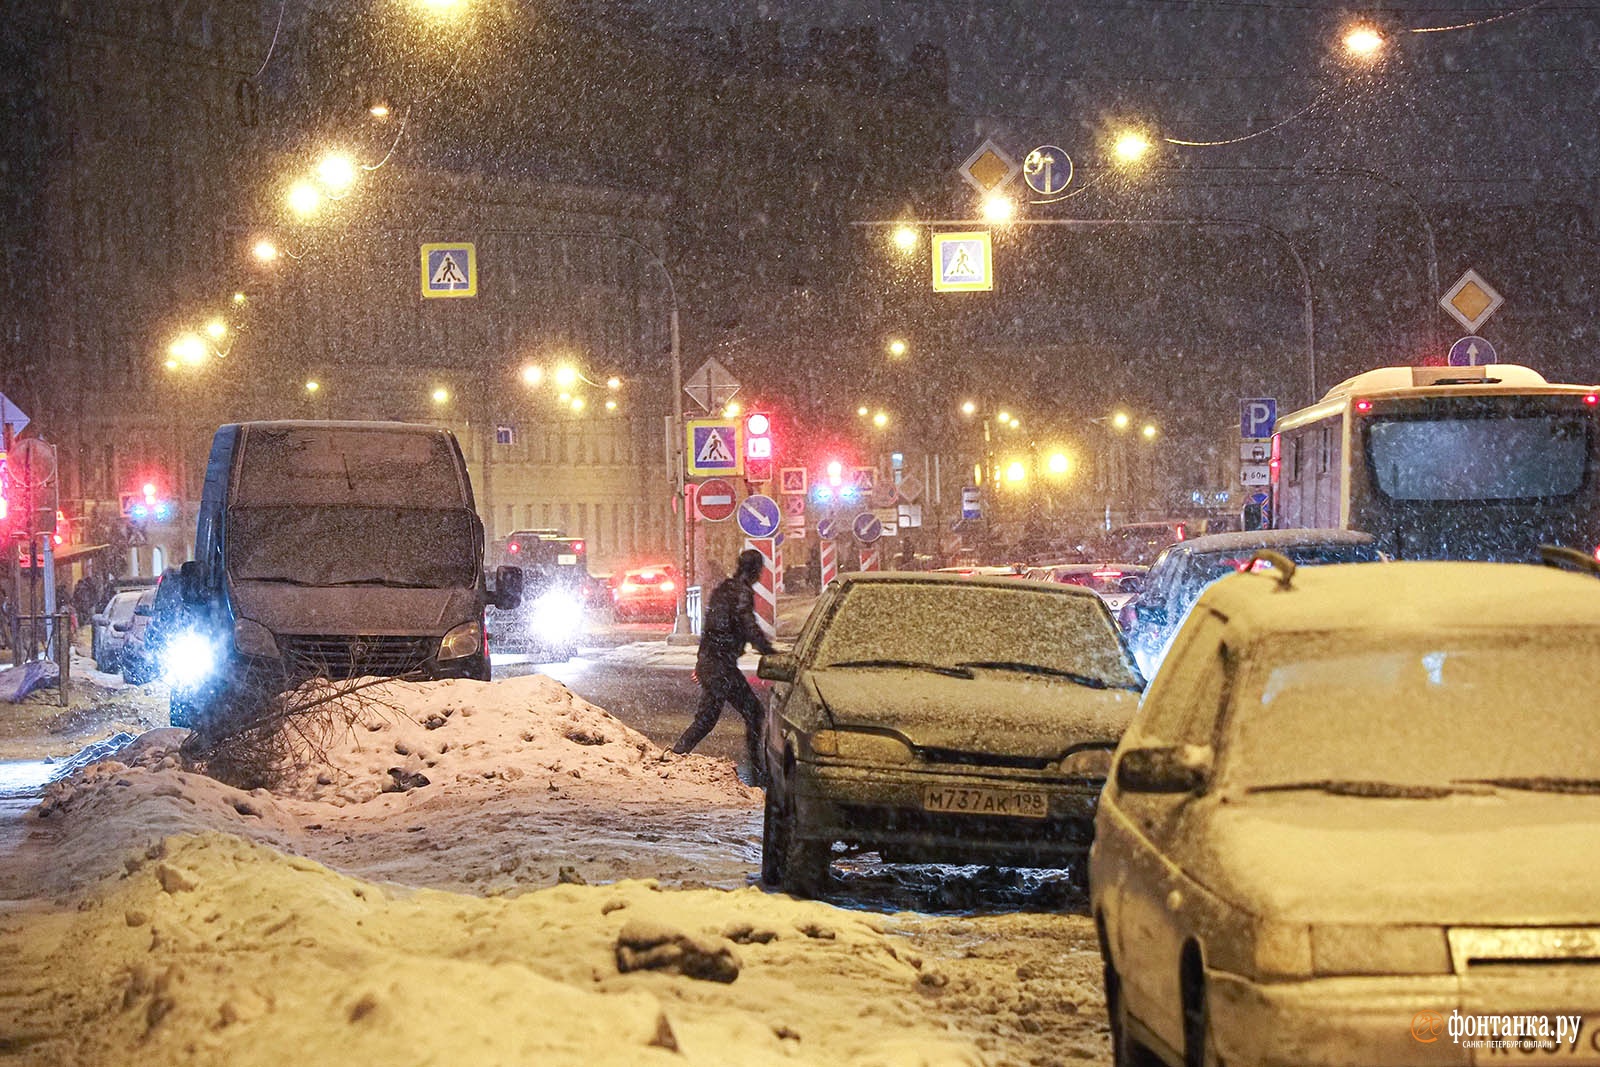 Петербург заполонили седые «мошки». Снег — на тротуарах, оконных рамах и шапках горожан